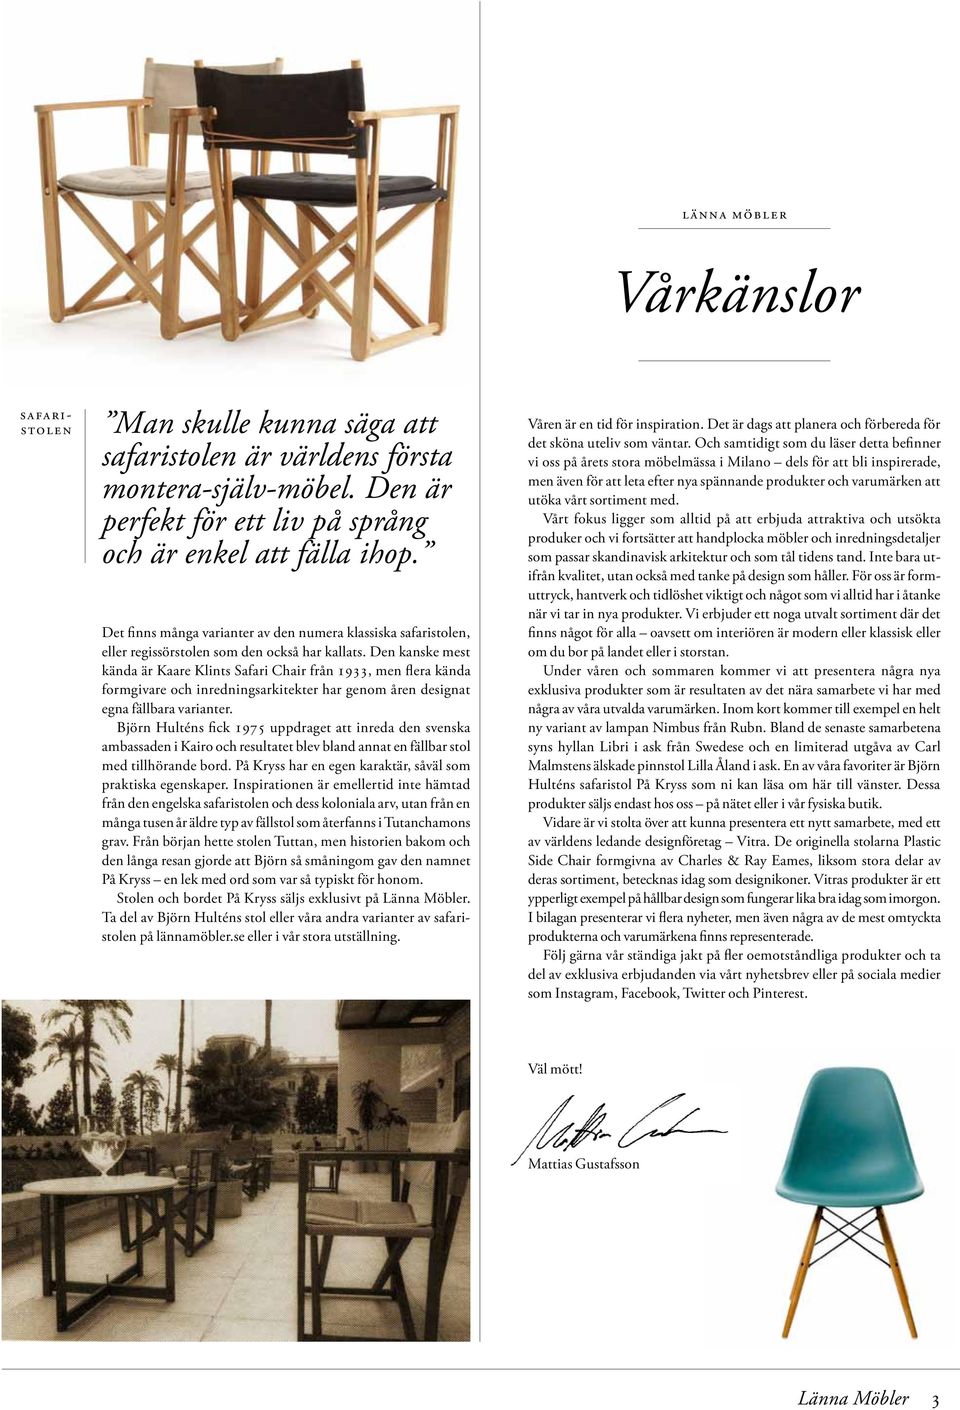 Den kanske mest kända är Kaare Klints Safari Chair från 1933, men flera kända formgivare och inredningsarkitekter har genom åren designat egna fällbara varianter.